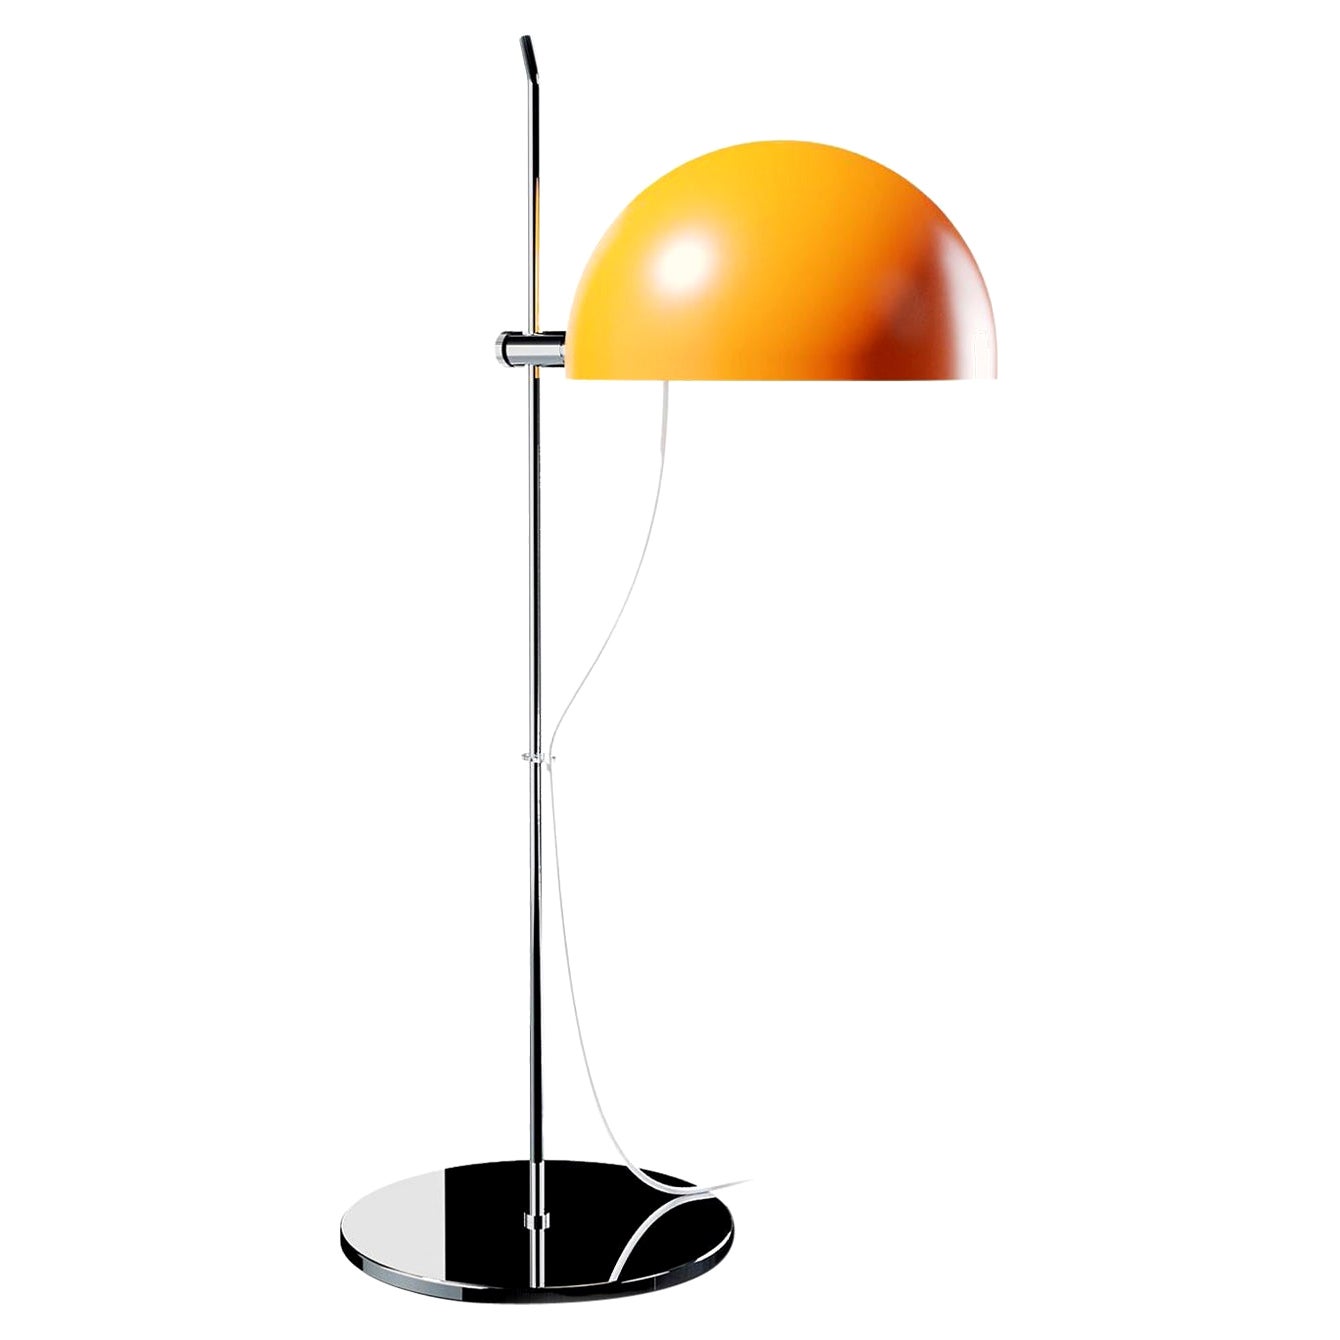 Alain Richard 'A21' Desk Lamp in Orange for Disderot For Sale at 1stDibs